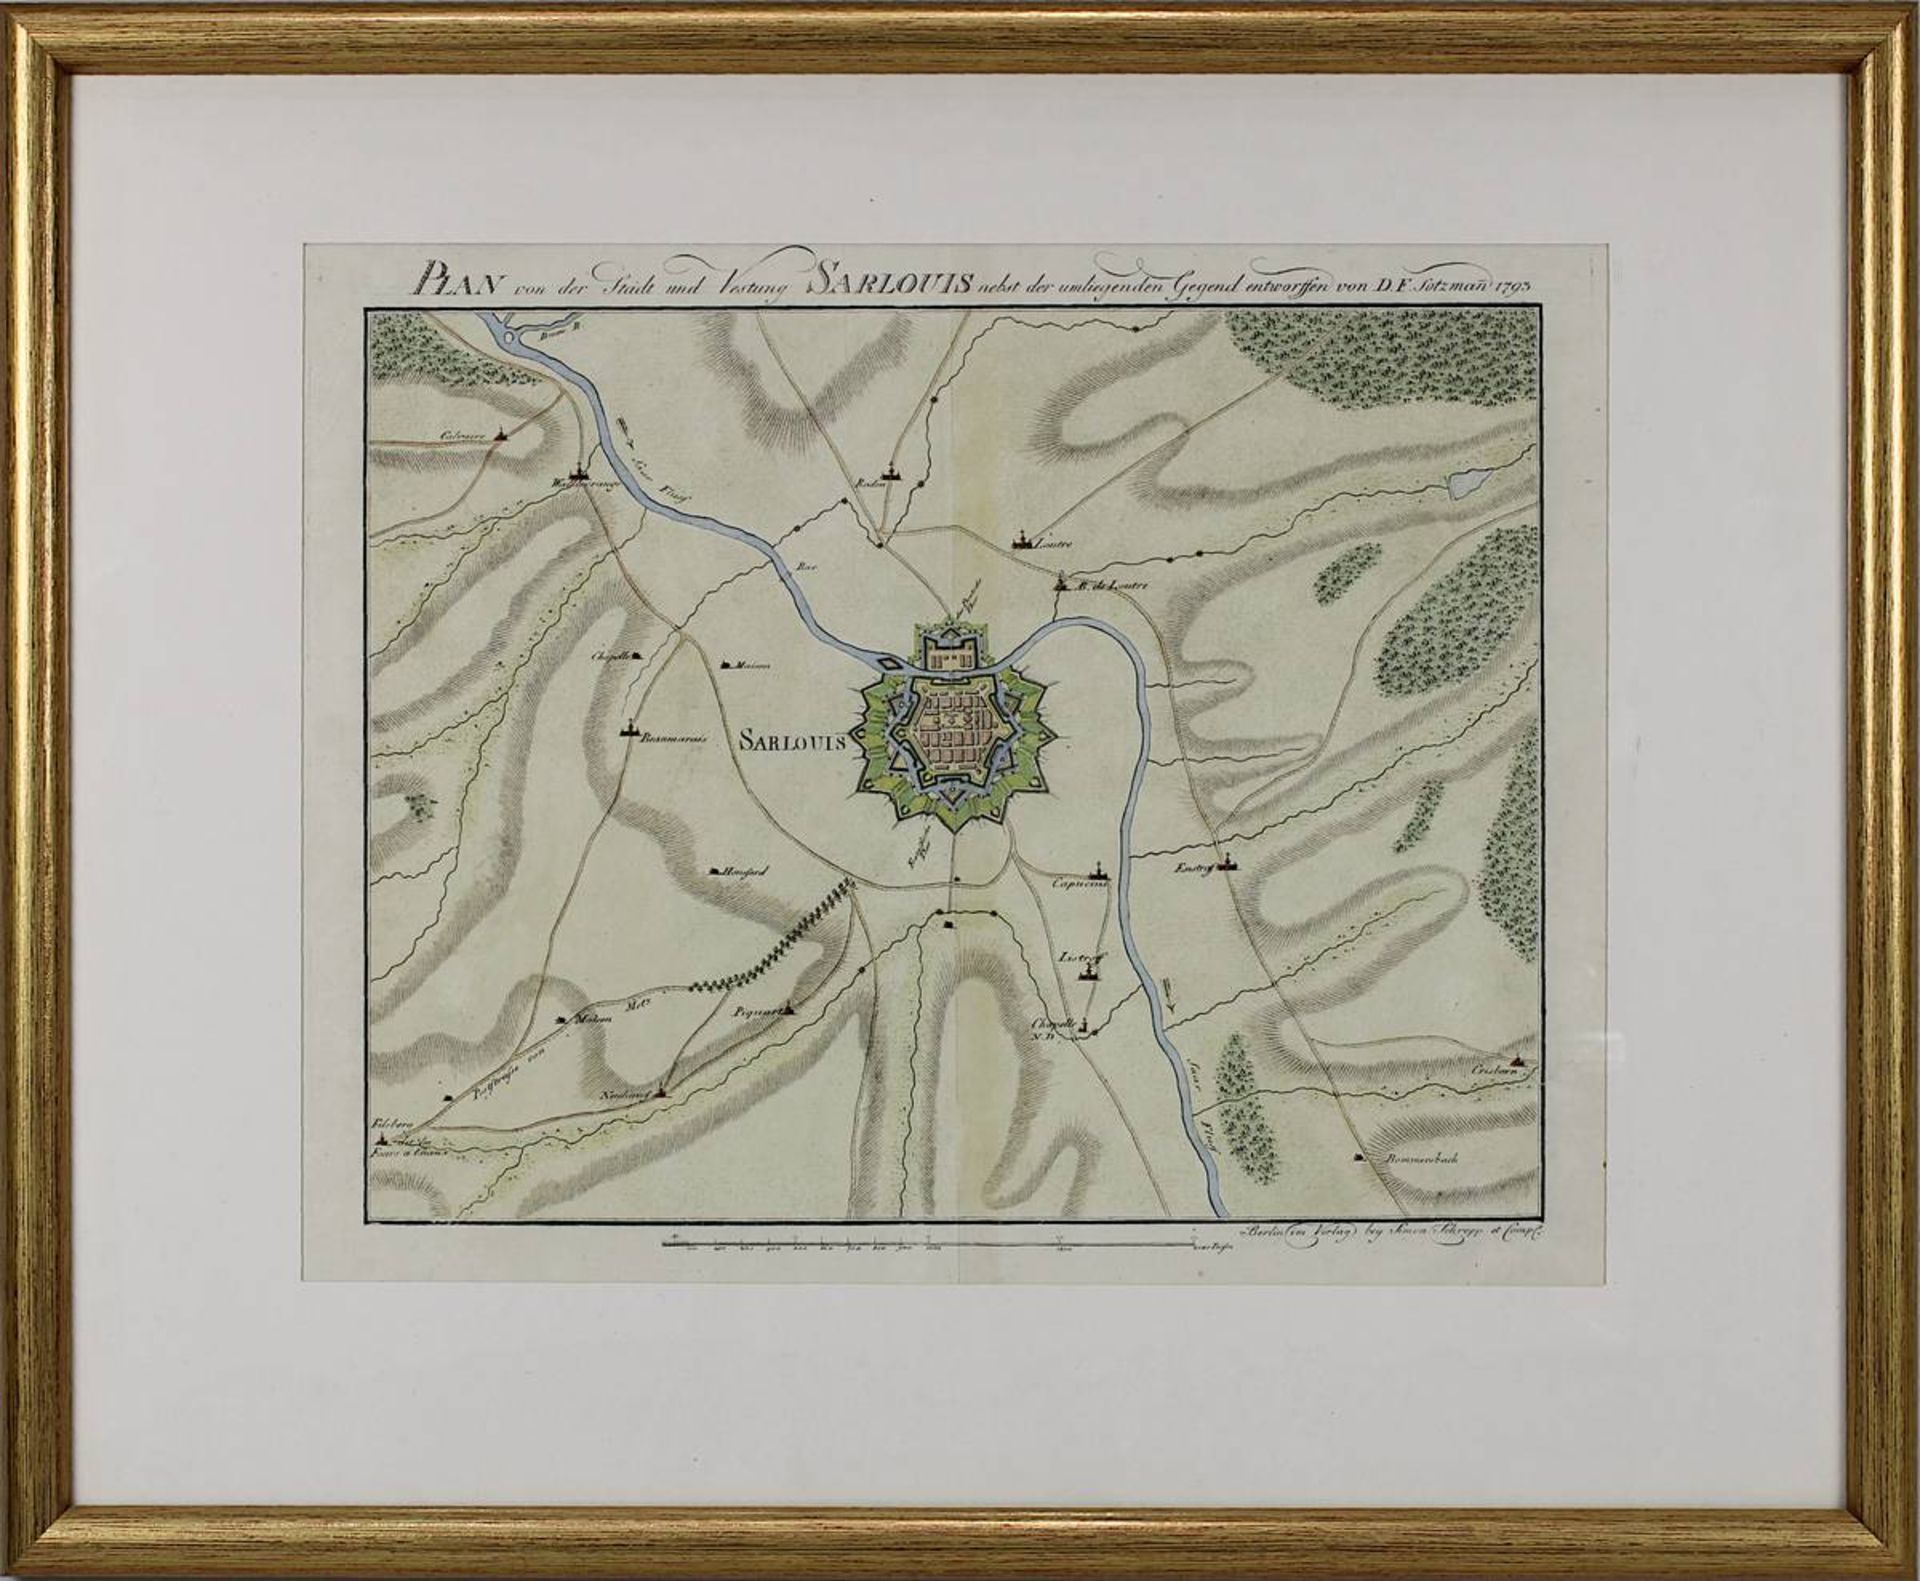 "Plan von der Stadt u. Vestung Sarlouis (Saarlouis), nebst der umliegenden Gegend, Entworfen von